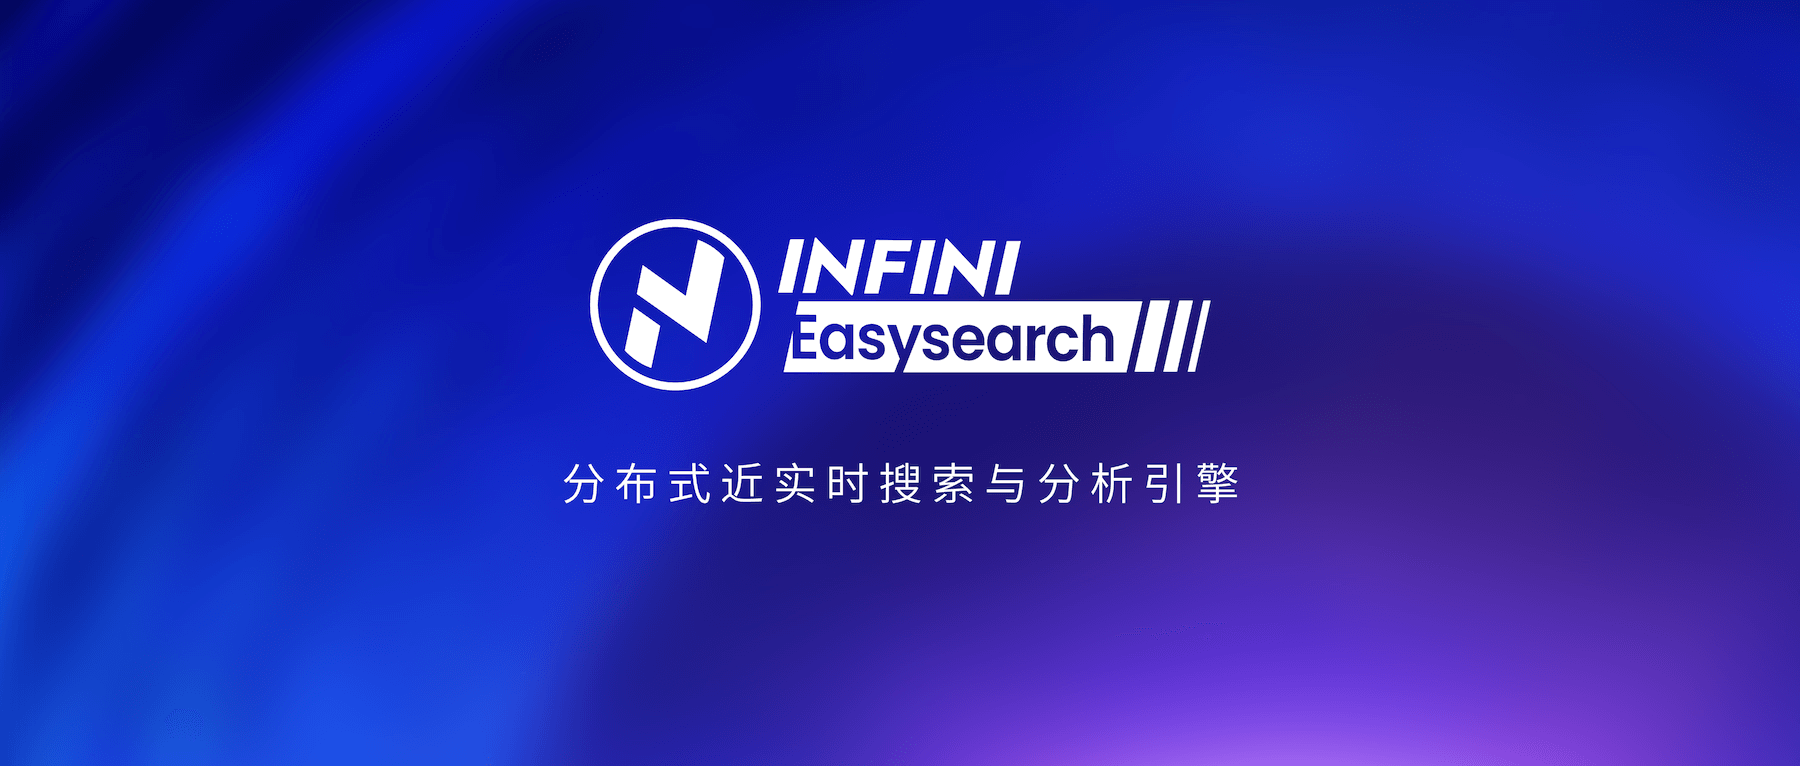 关于 easysearch